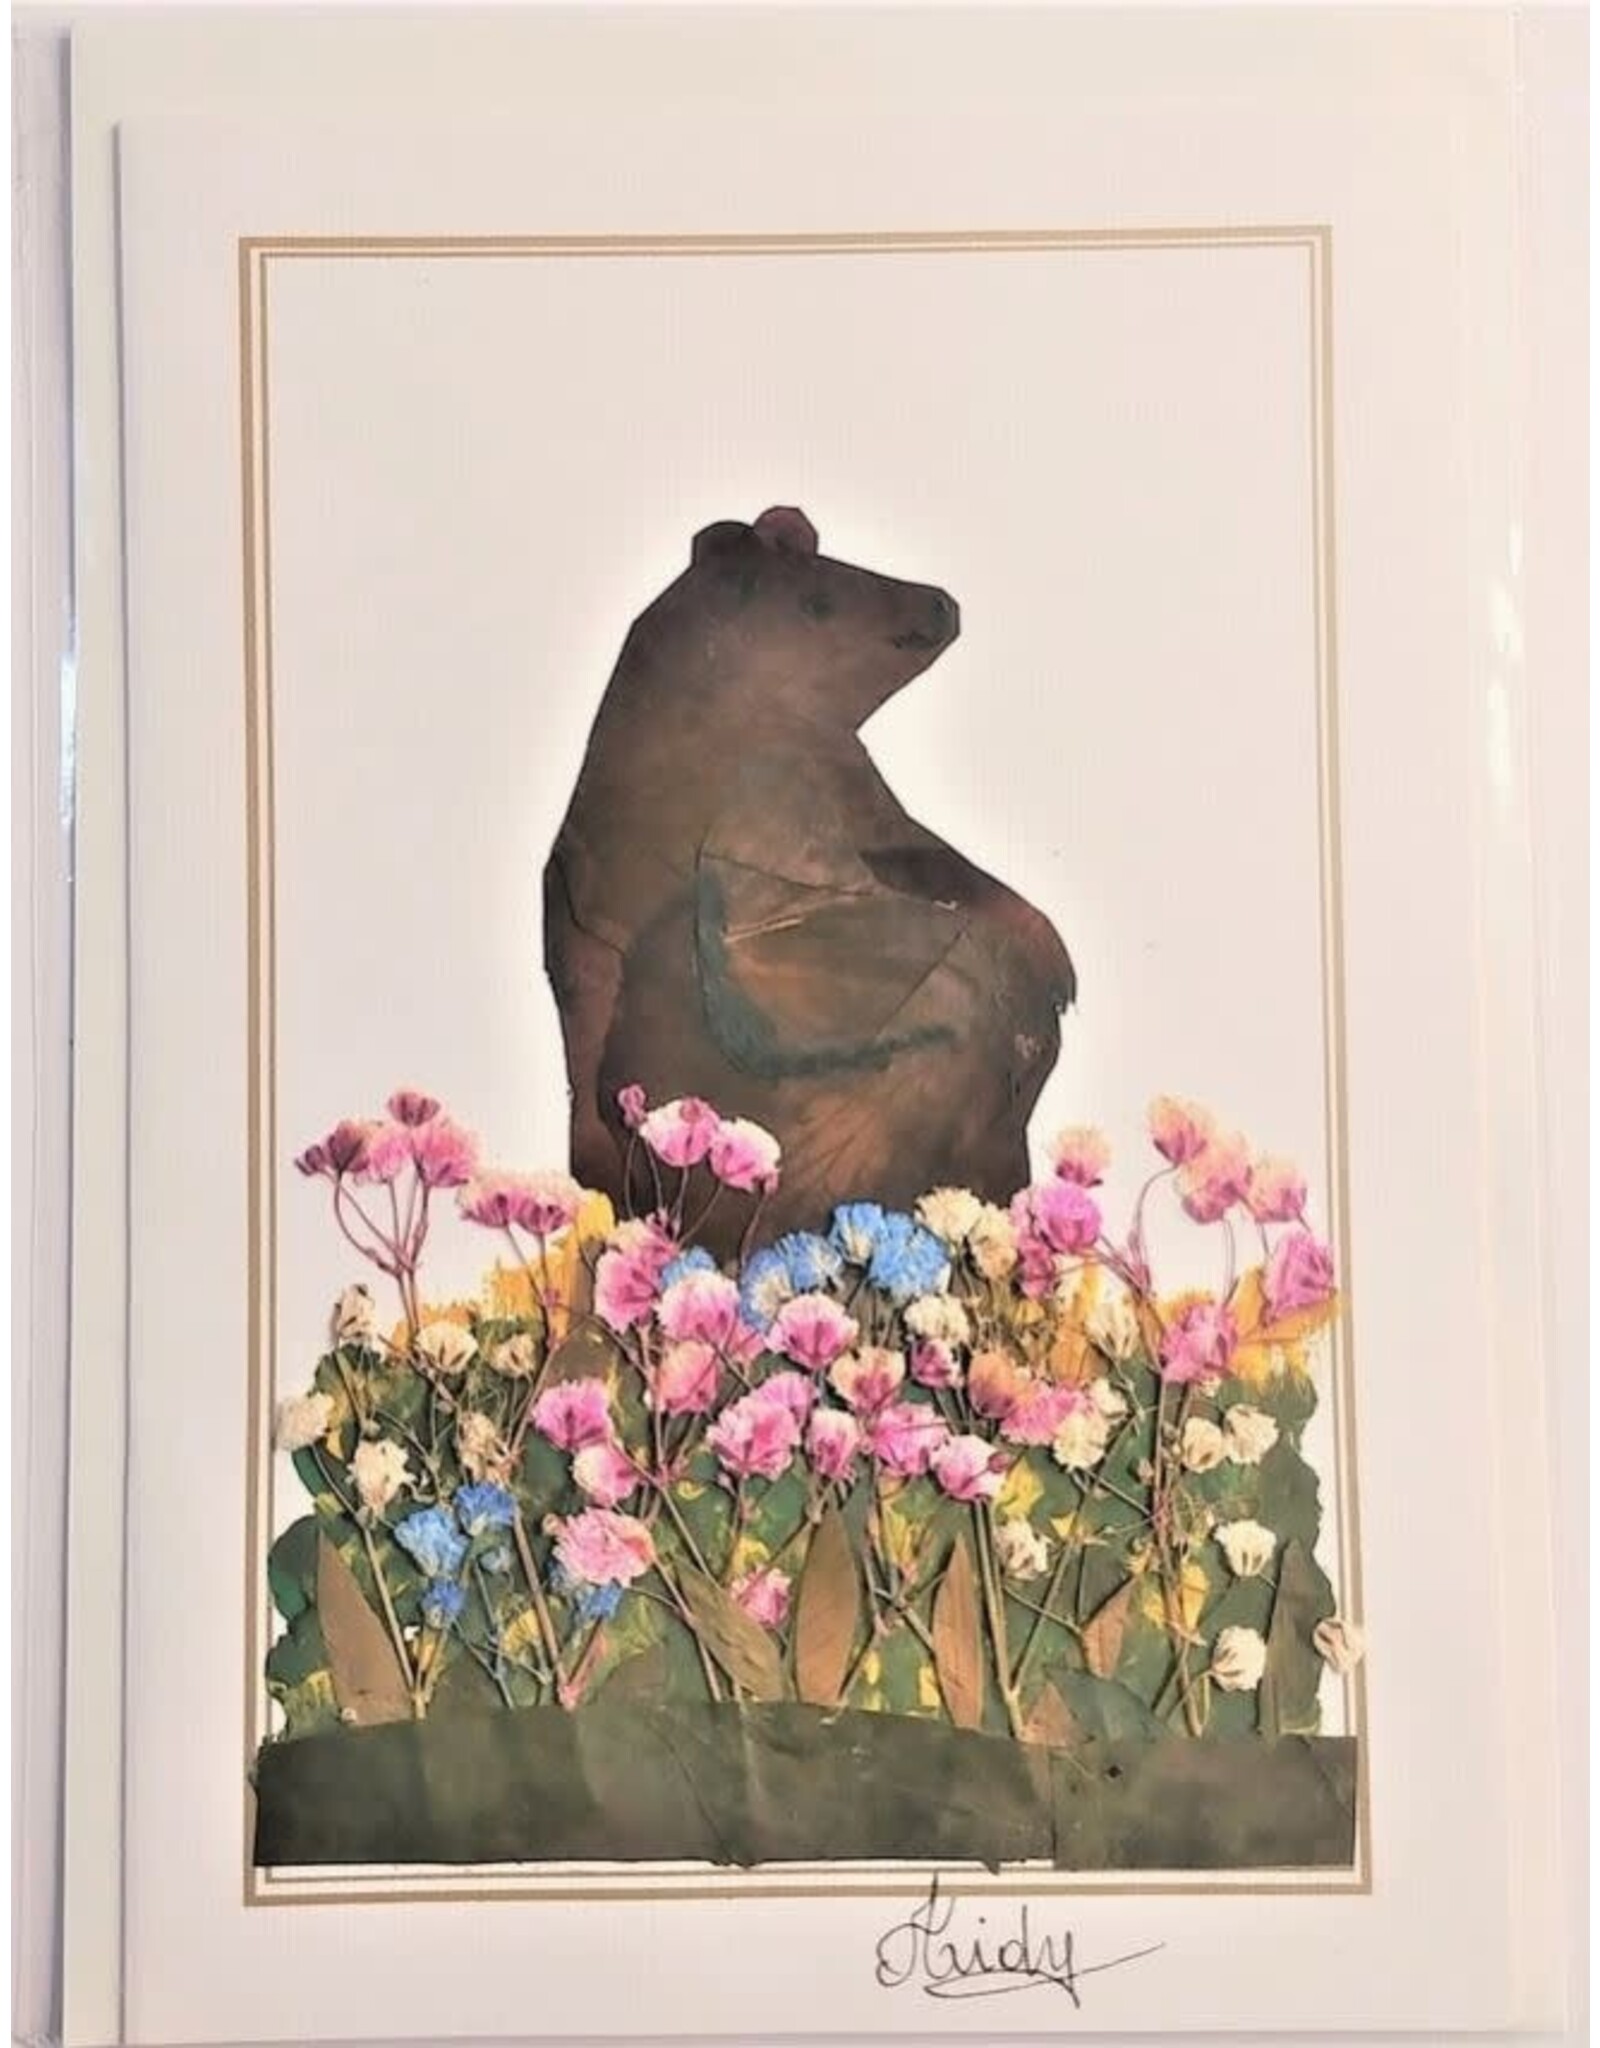 Ecuador Pressed Flower Greeting Card, Ecuador